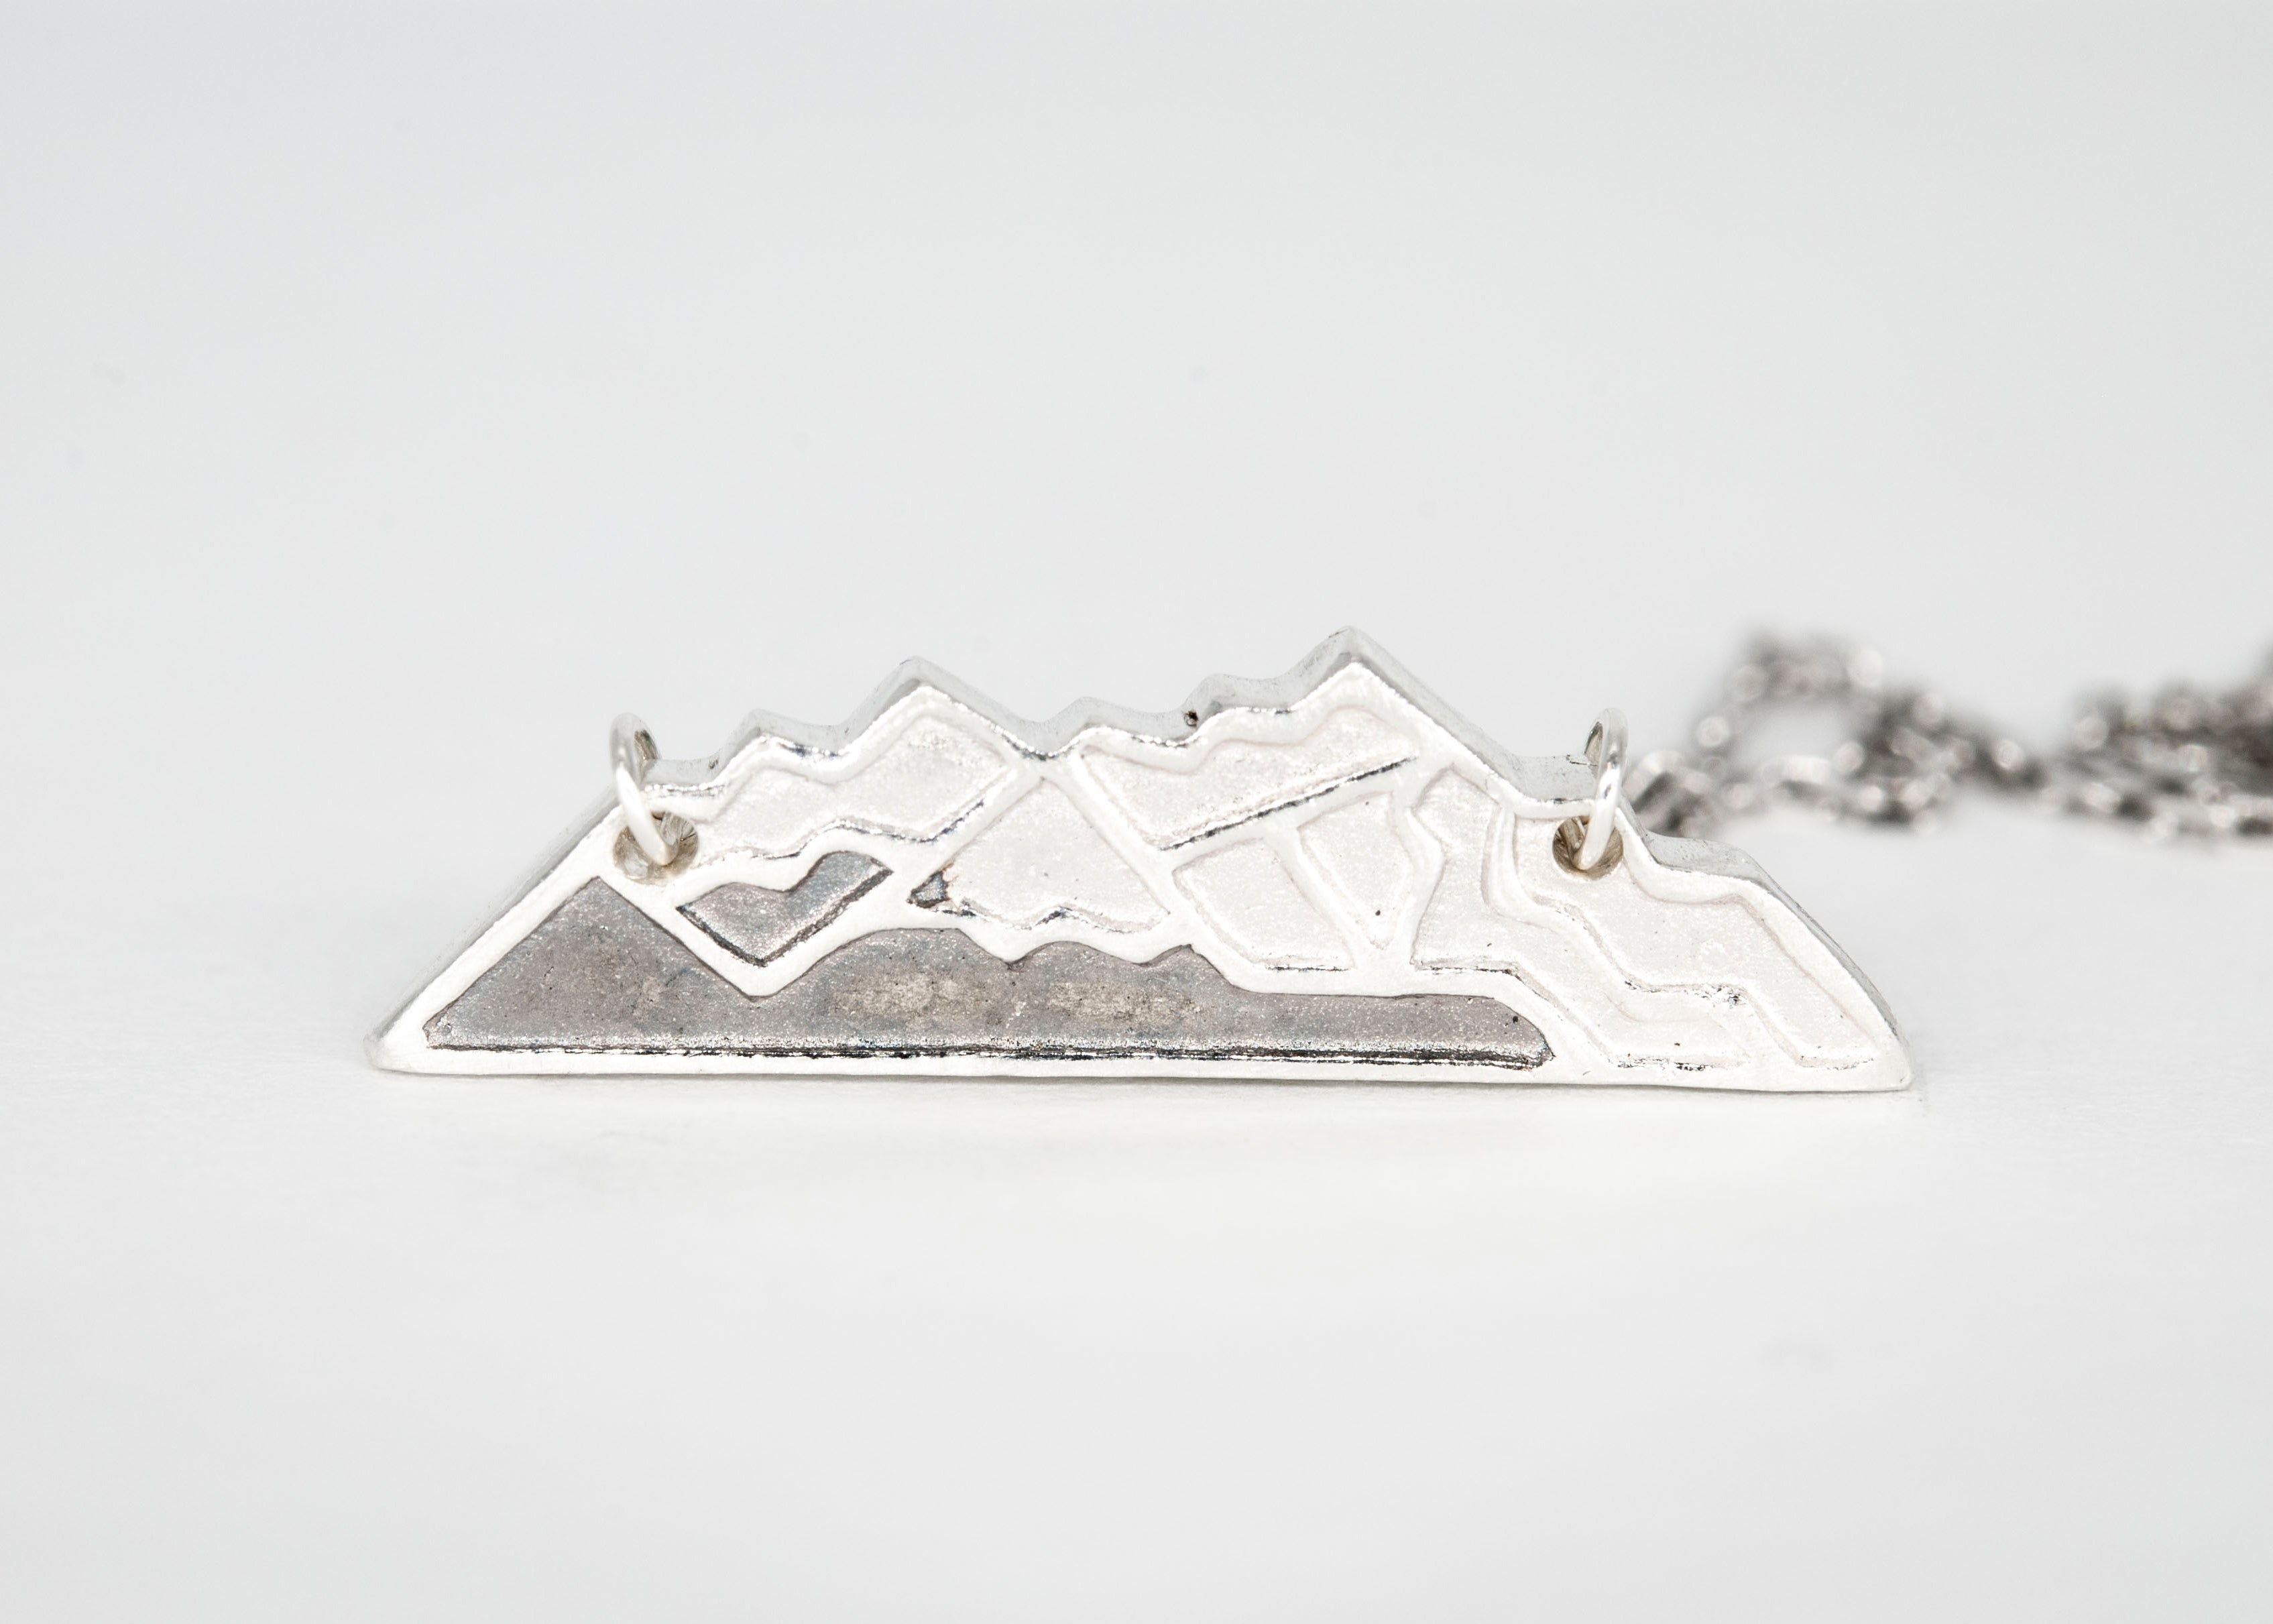 Whistler Mountain Necklace